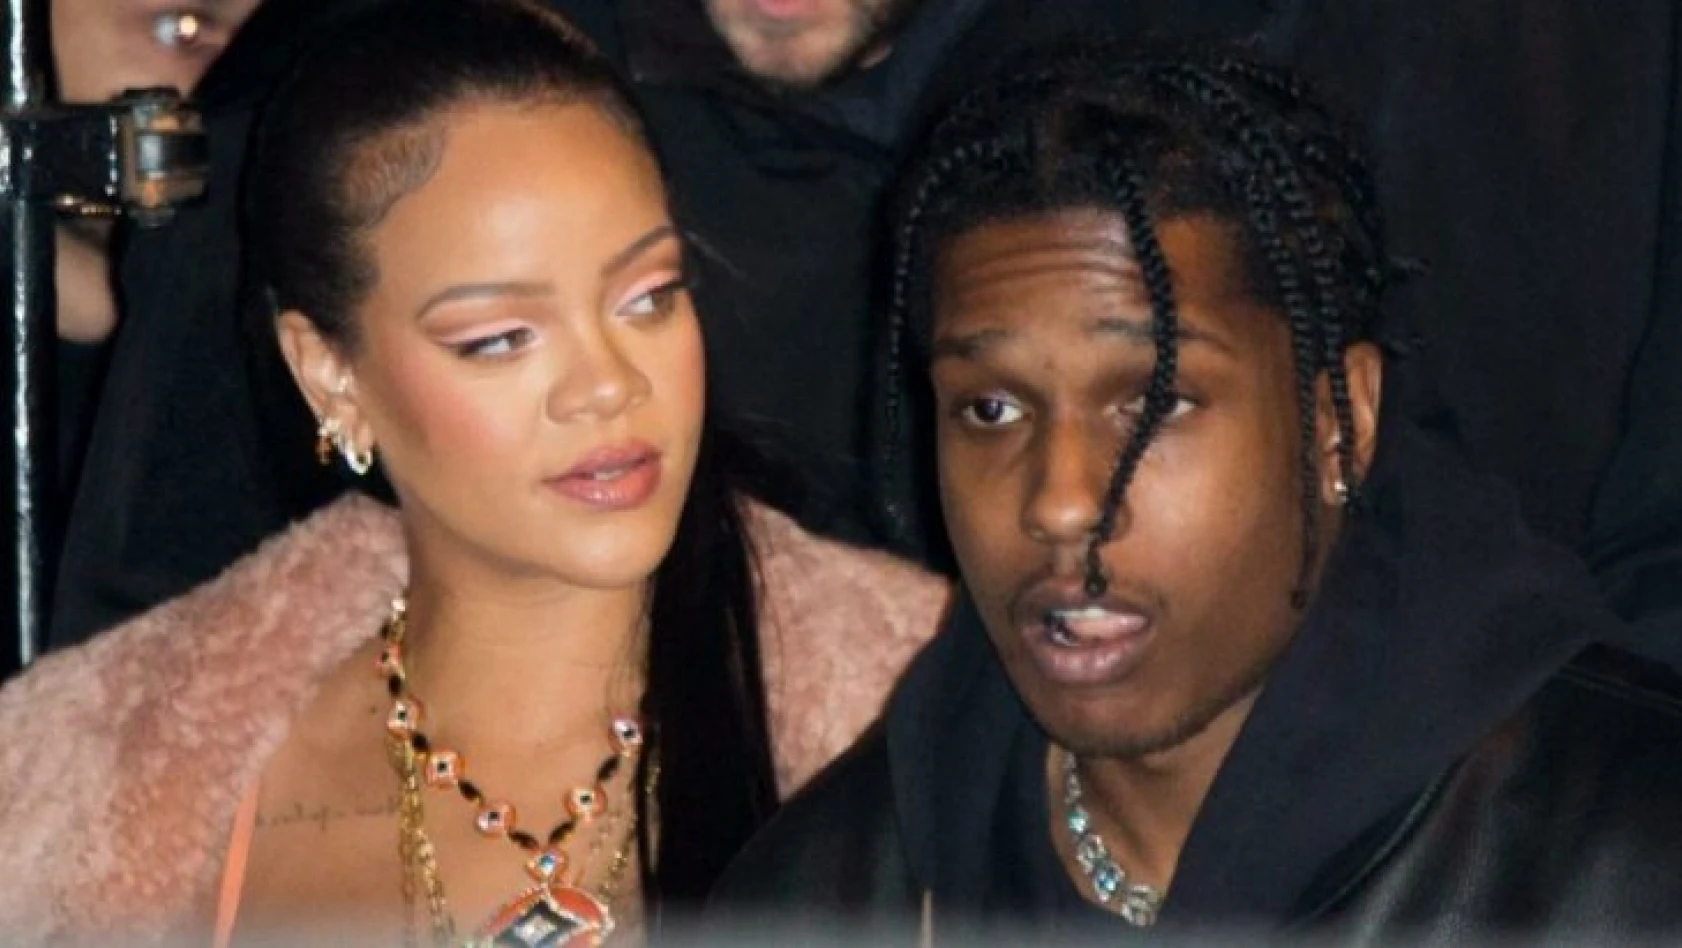 9 yıldır aşk yaşıyorlar! ASAP Rocky, Rihanna'yı aldattı mı? Gerçek ortaya çıktı!